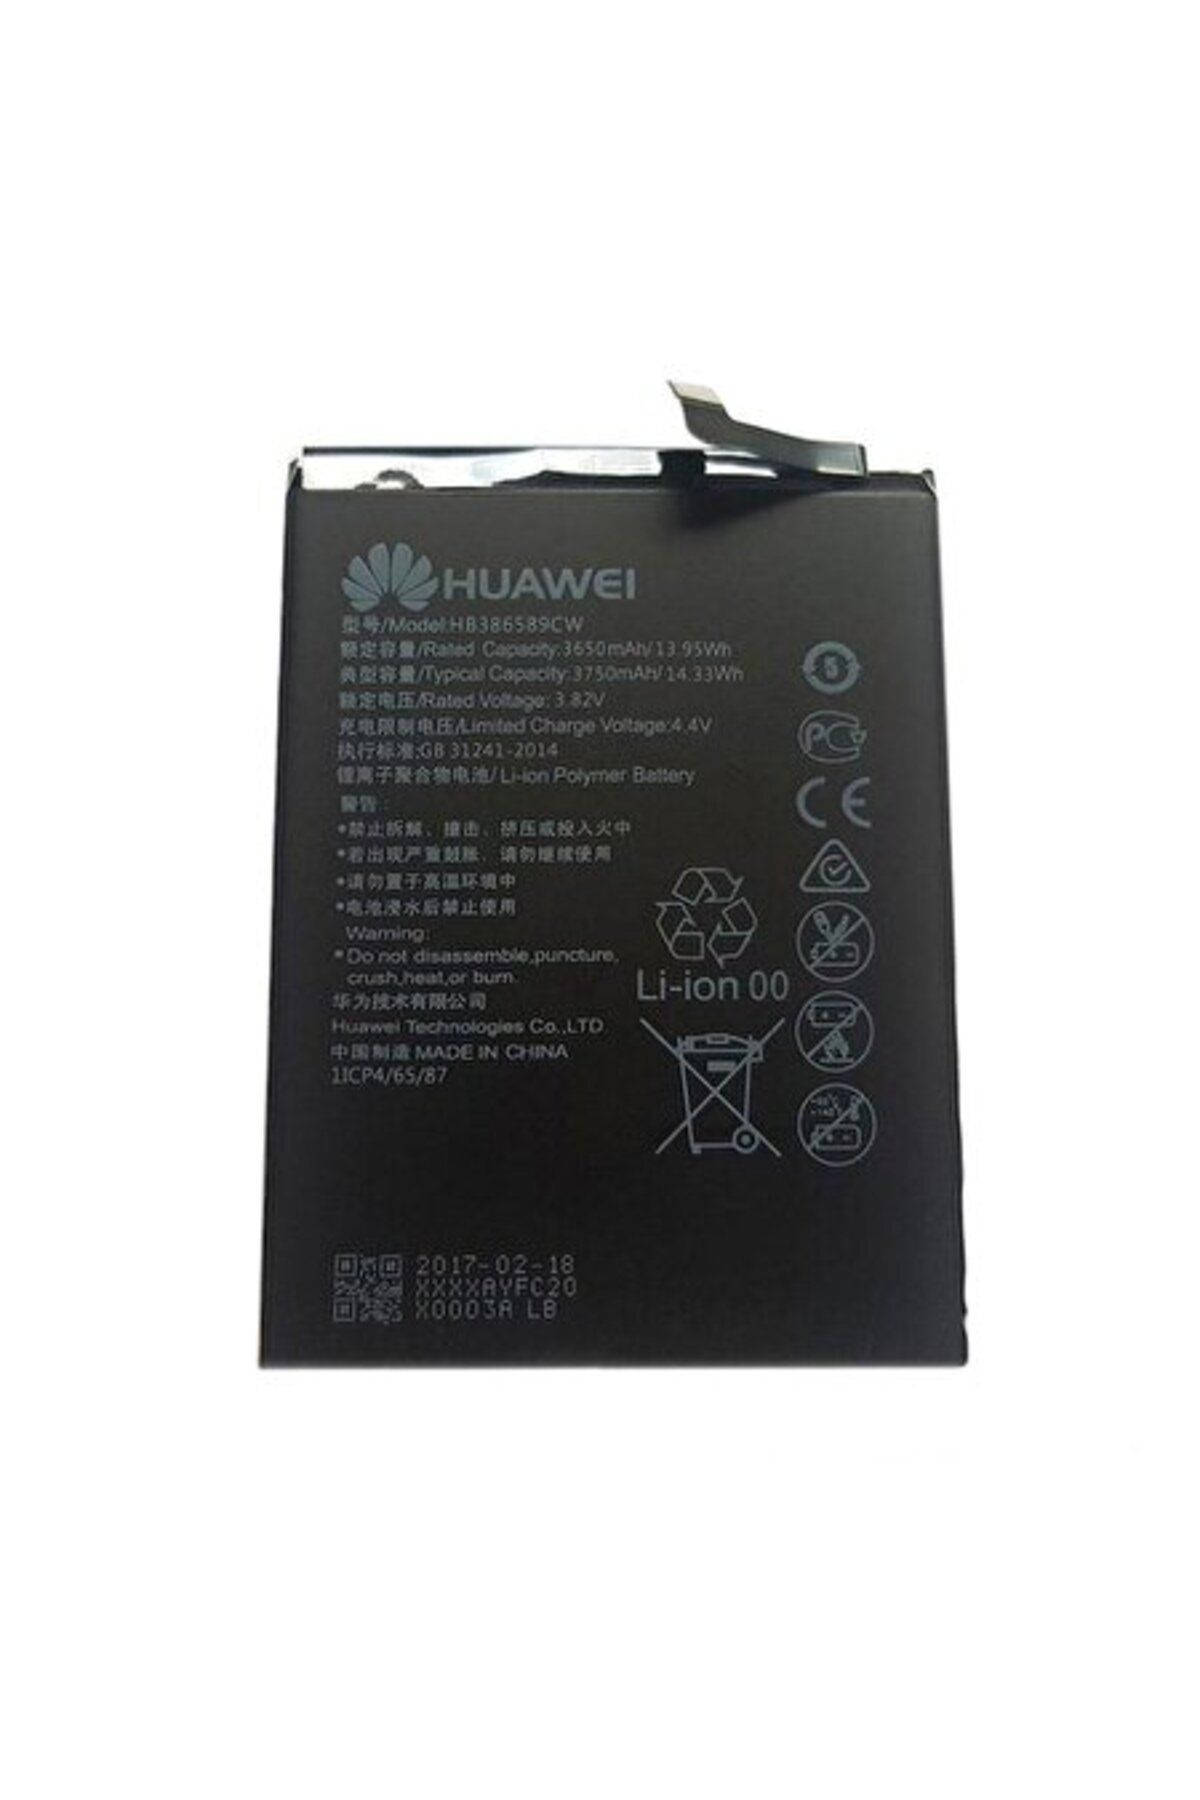 Honor Huawei Honor V10 Hb386589Cw Batarya Pil